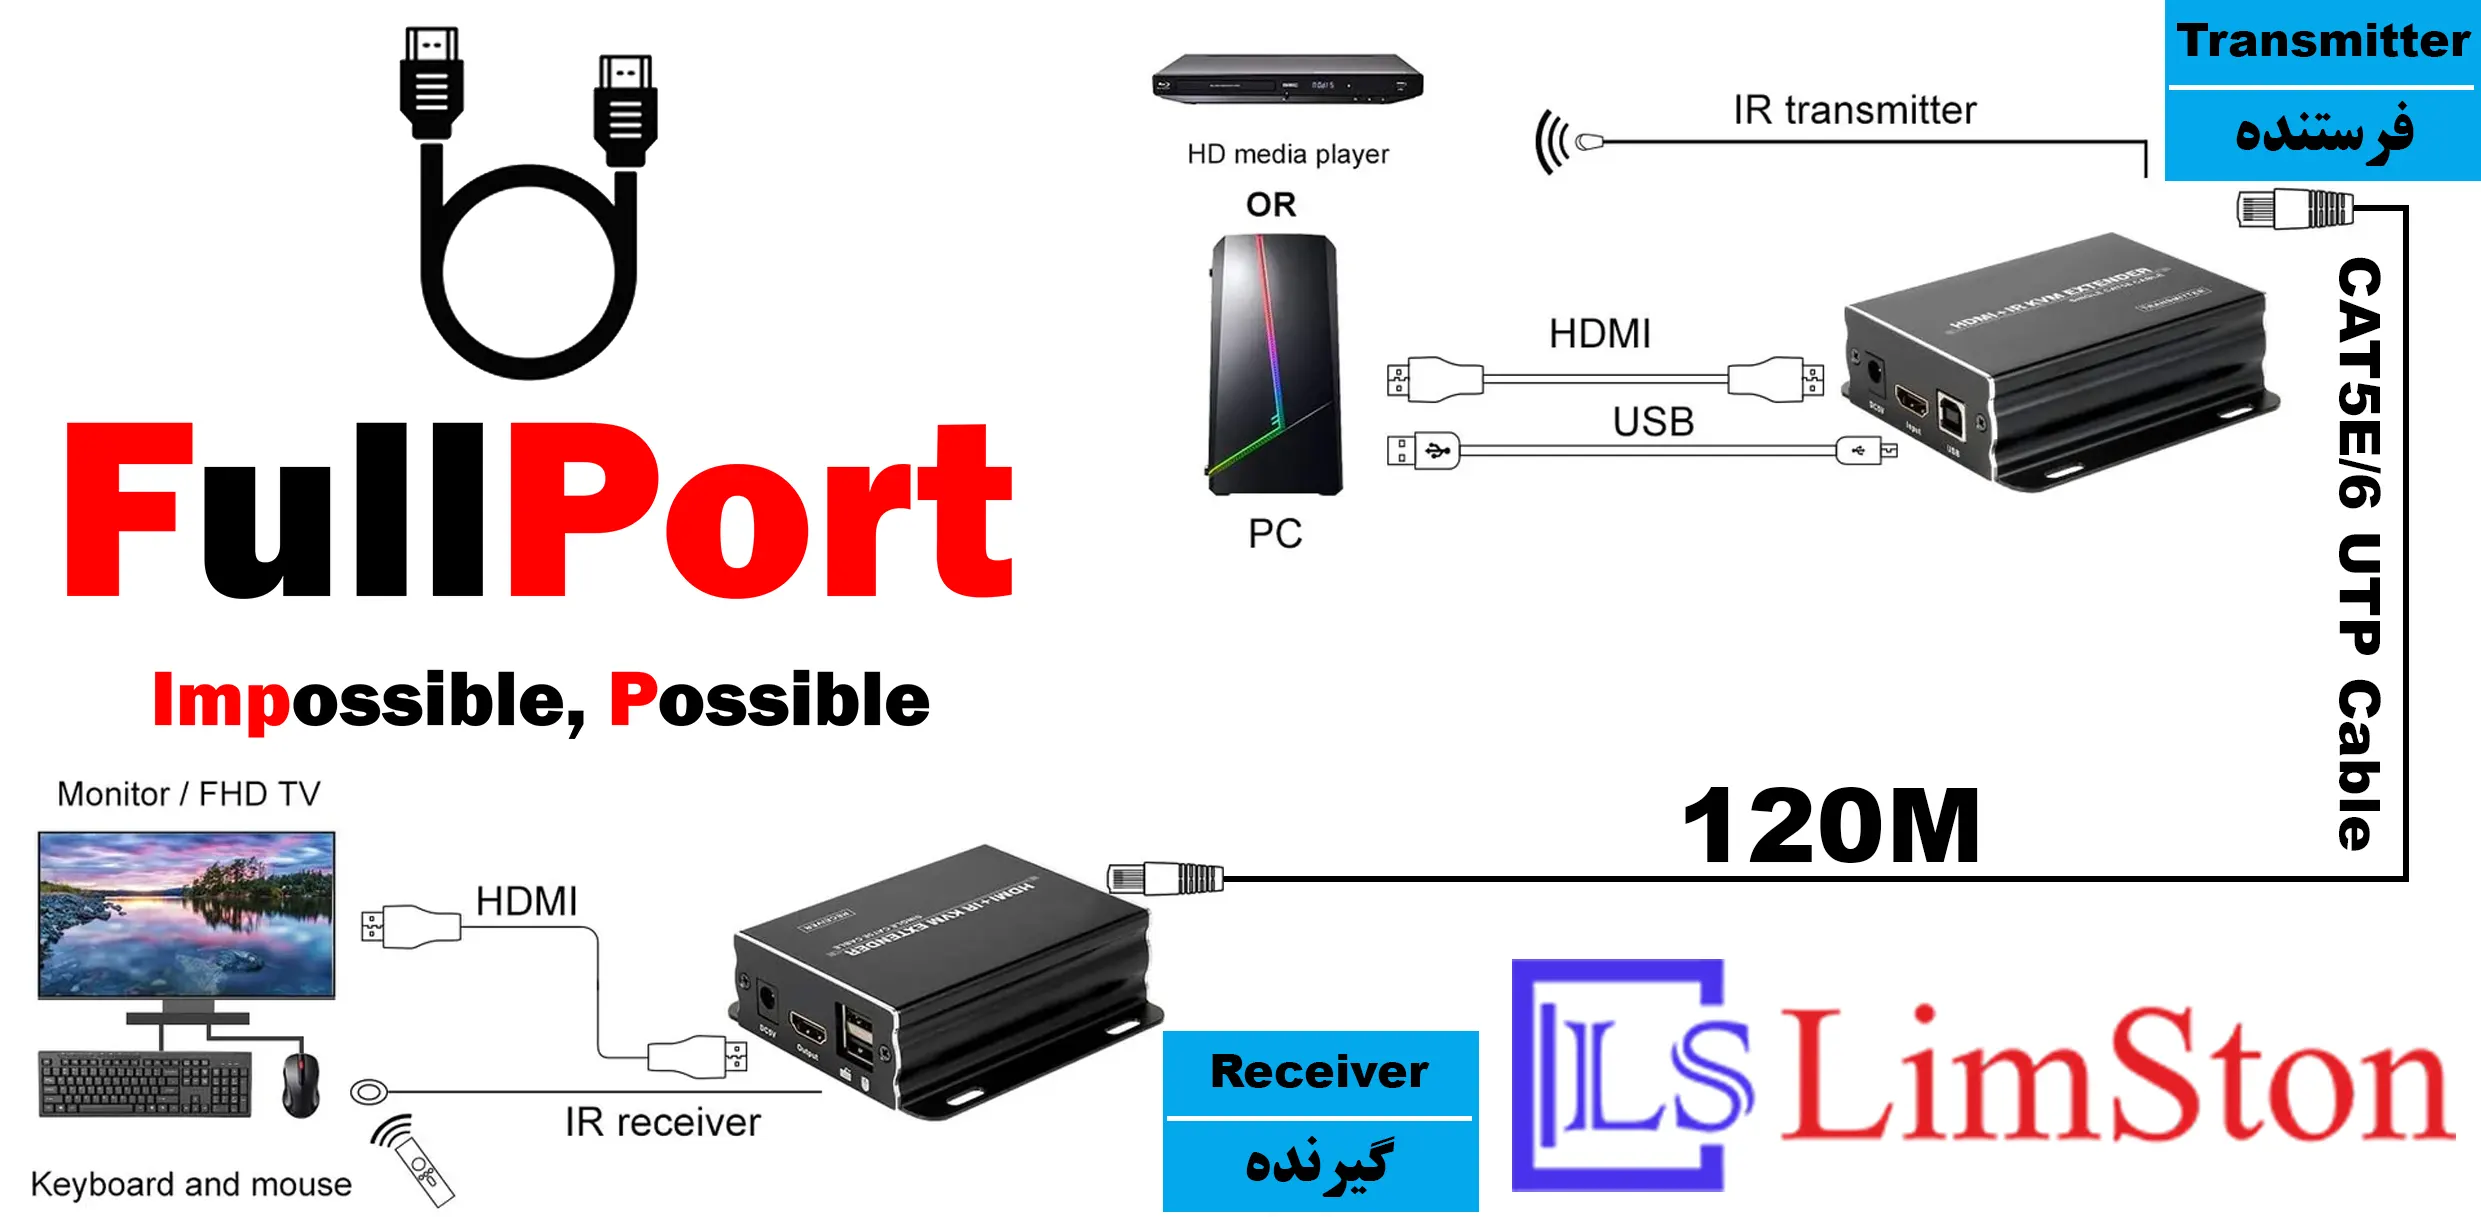 خرید اینترنتی توسعه دهنده HDMI TCP/IP روی کابل شبکه 120 متر لایمستون مدل Limestone LS-HKE200 از فروشگاه اینترنتی فول پورت